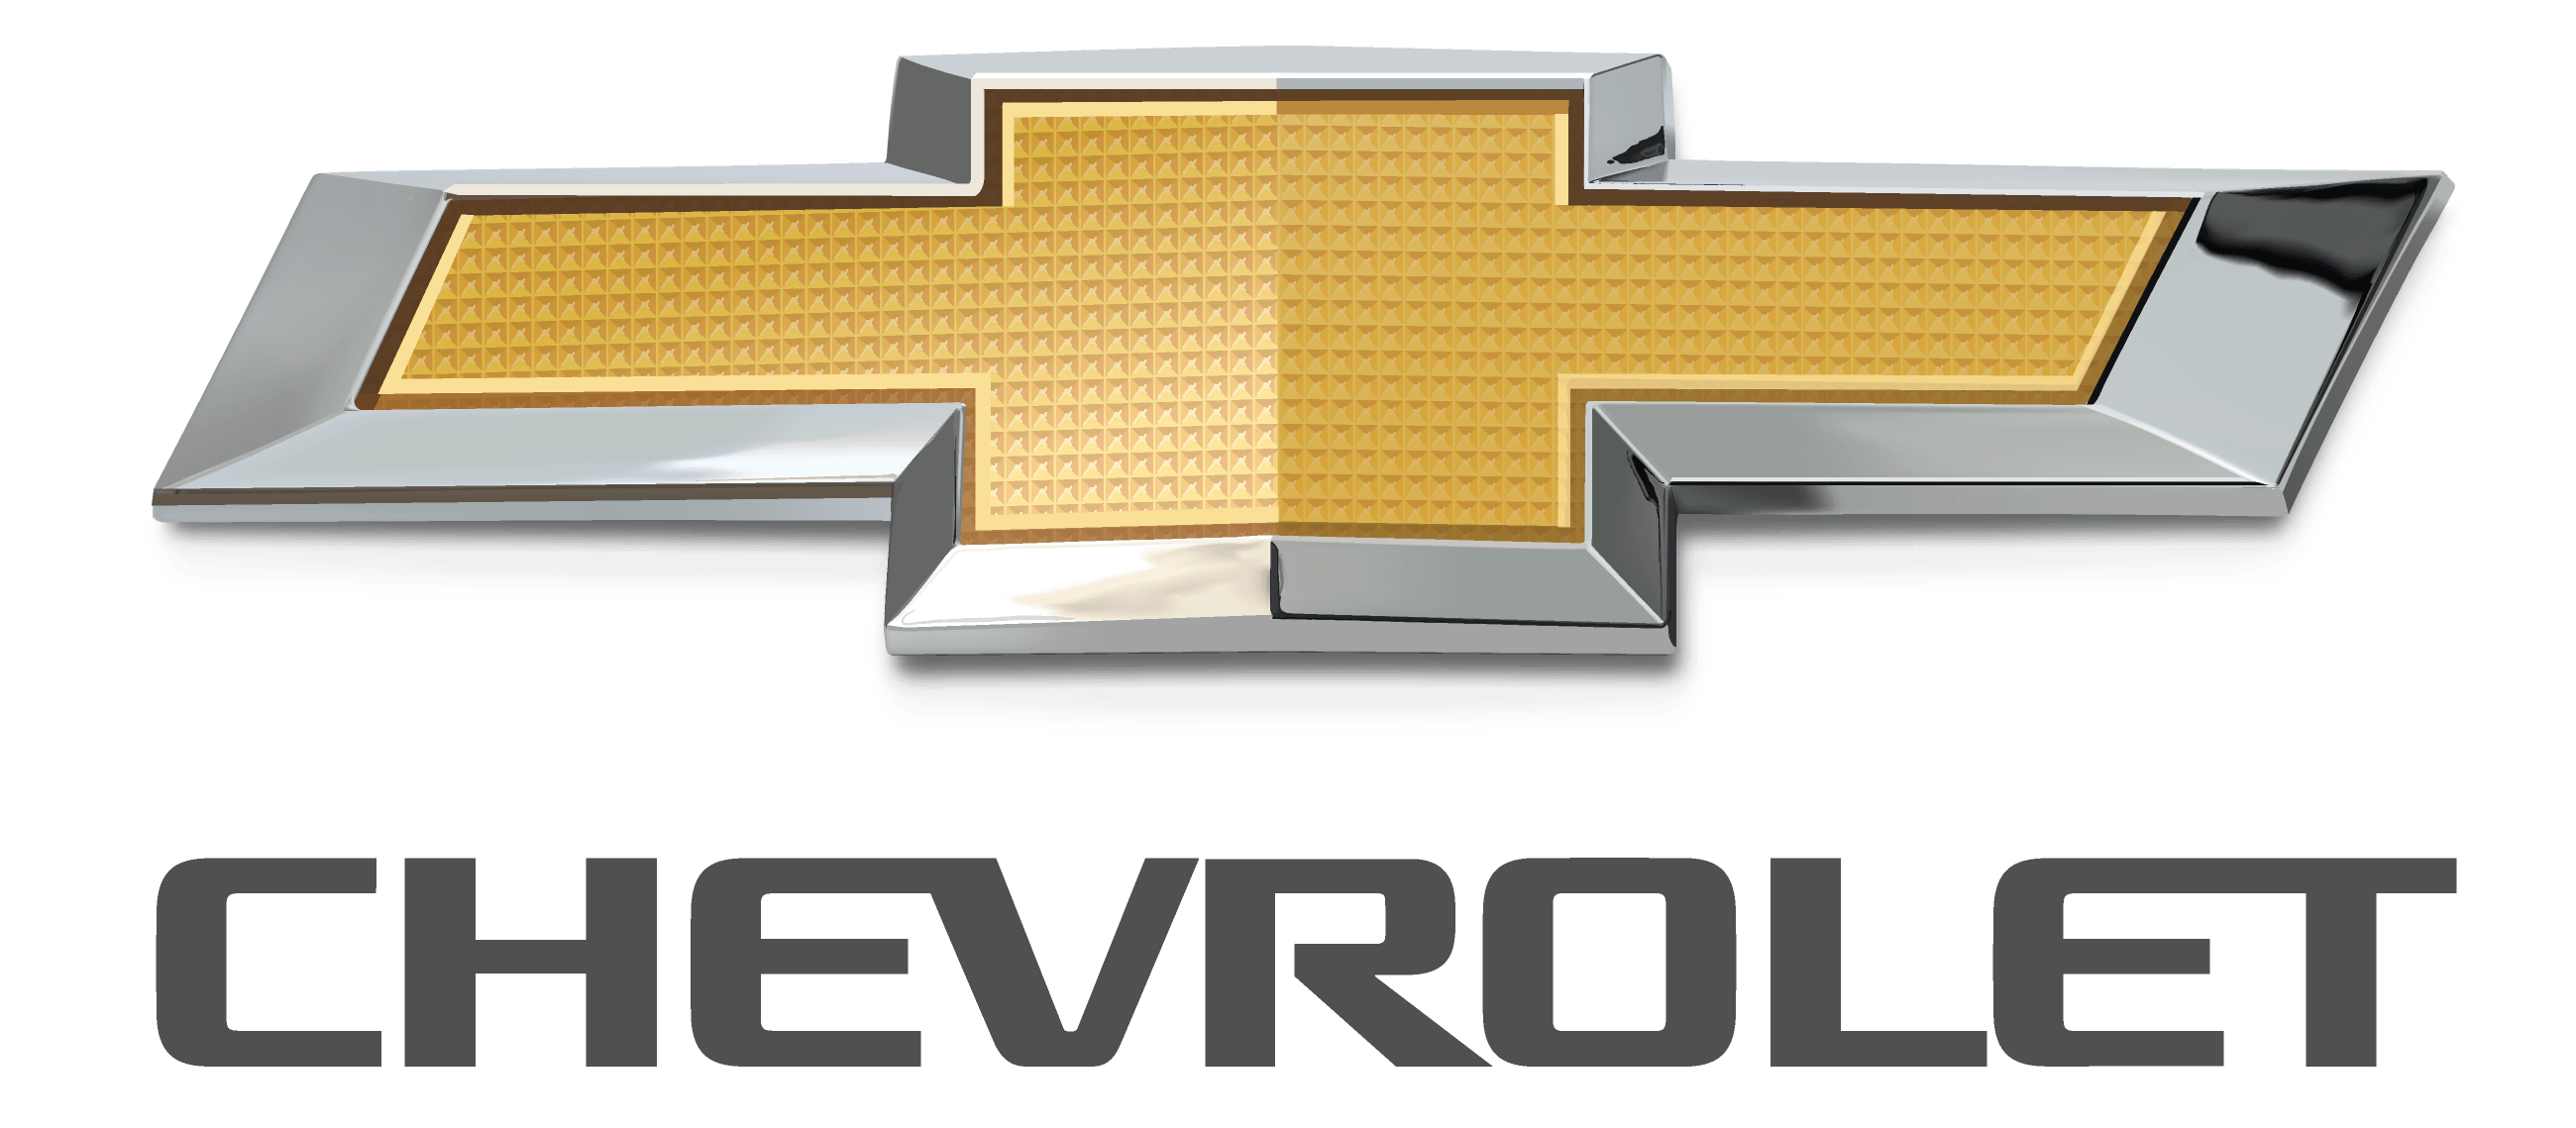 Chevrolet Car Logo - Chevrolet Logo PNG Transparent Background Download Logo Designs